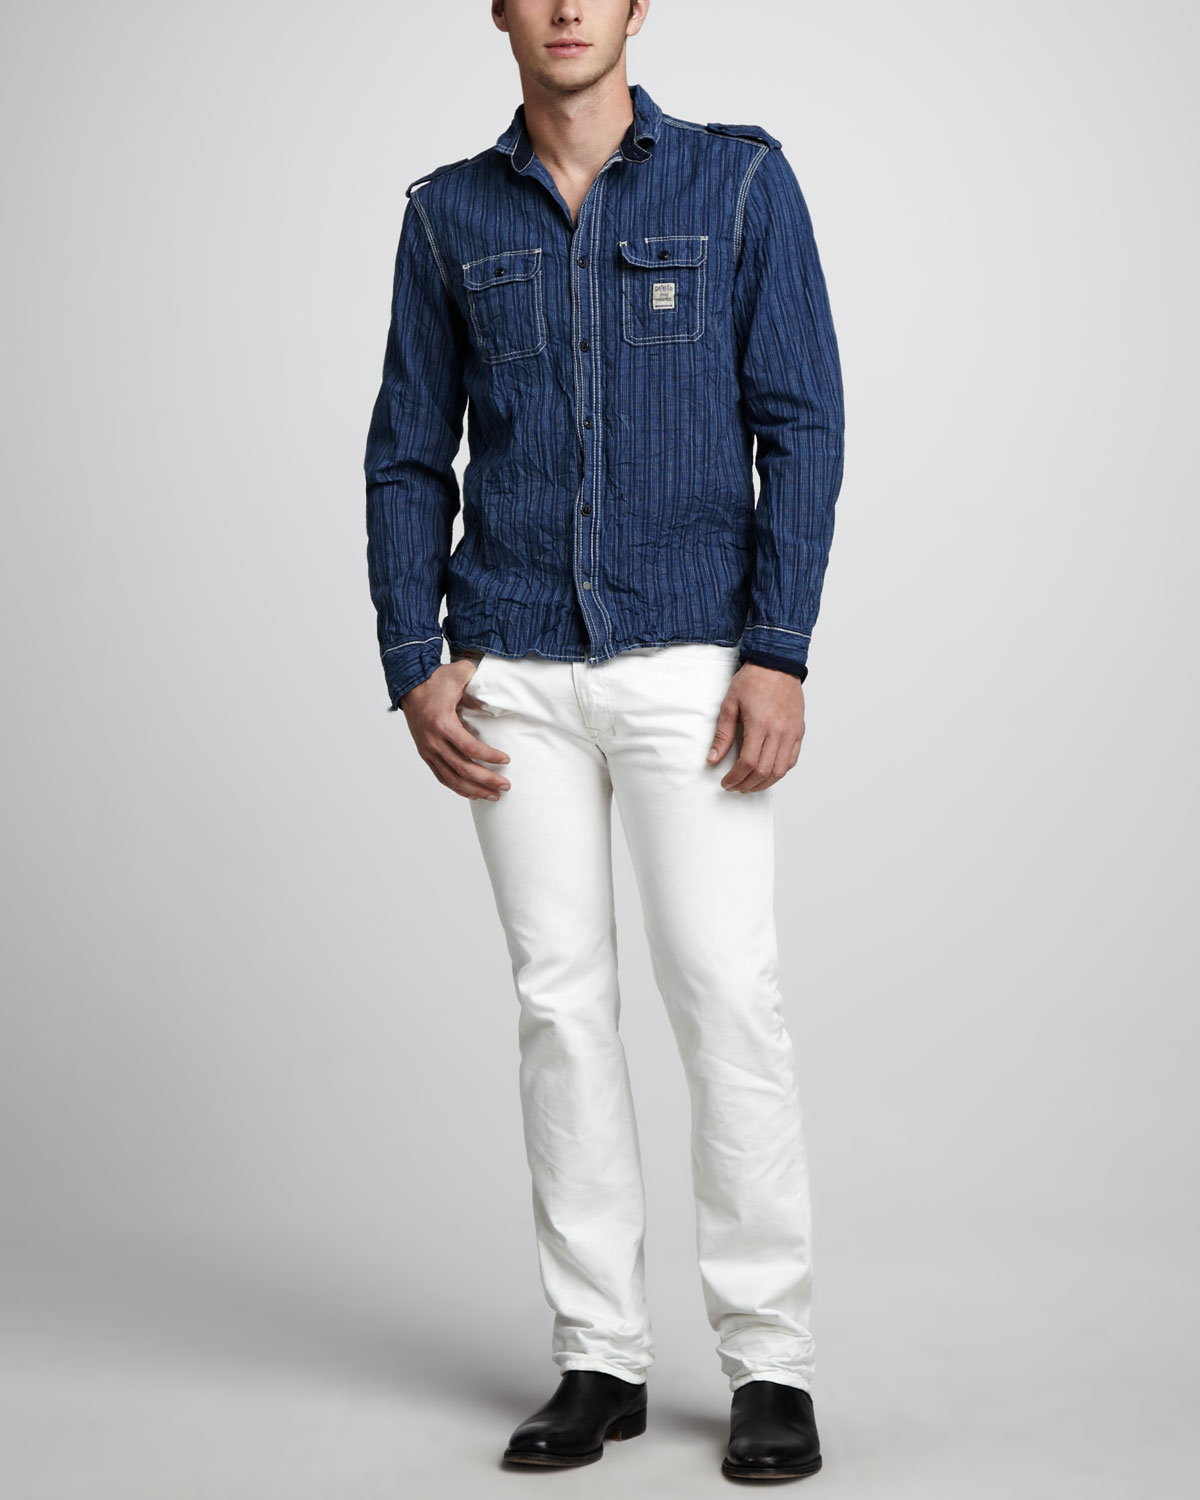 Lyst - Diesel Safado White Jeans 32 in White for Men